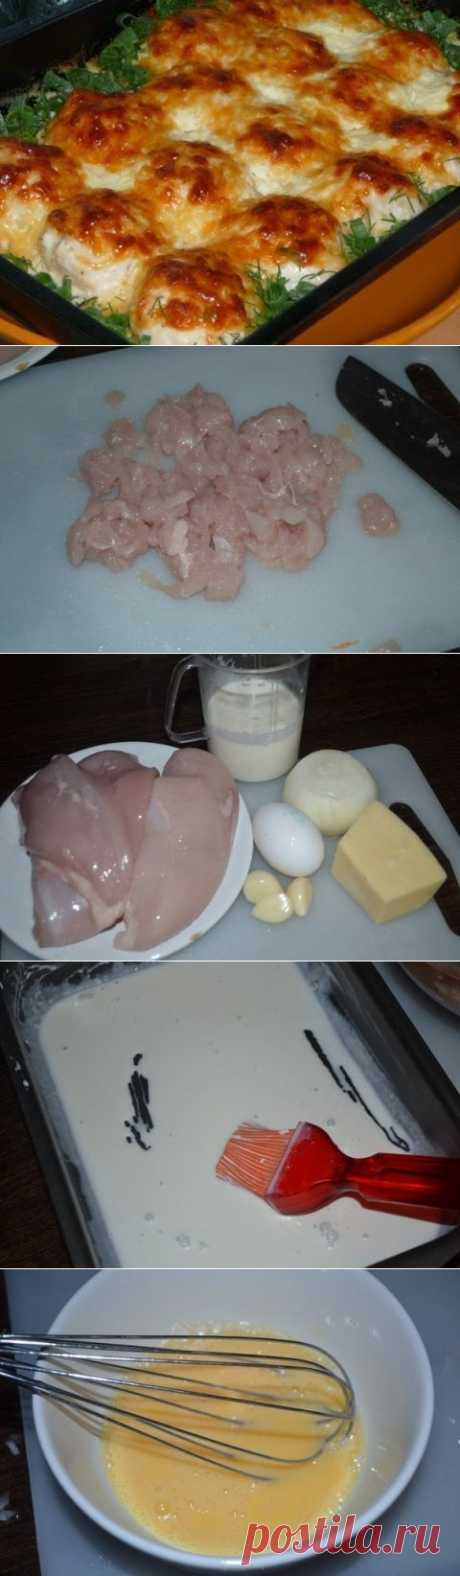 Как приготовить куриные шарики в сливочном соусе - рецепт, ингридиенты и фотографии